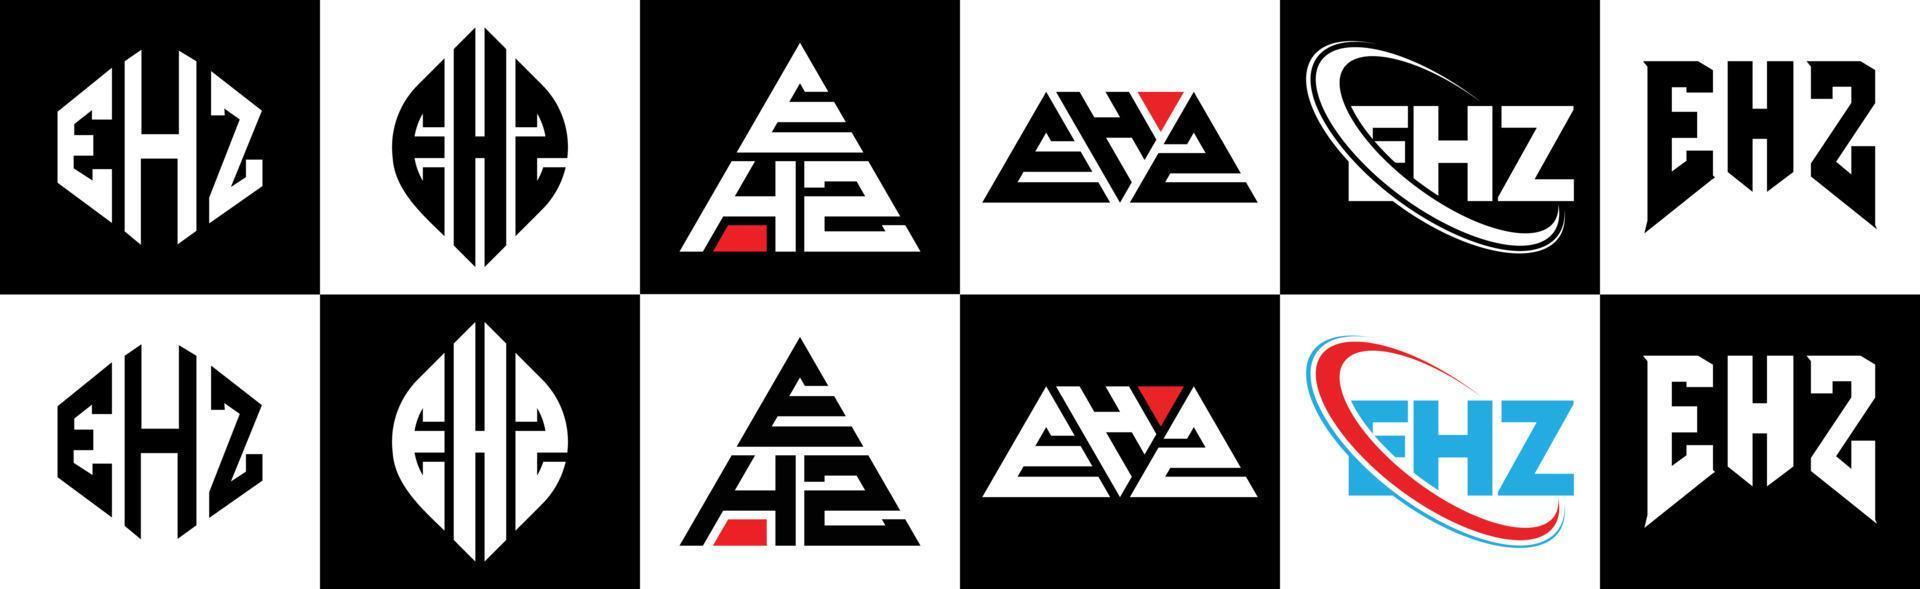 ehz-Buchstaben-Logo-Design in sechs Stilen. ehz polygon, kreis, dreieck, hexagon, flacher und einfacher stil mit schwarz-weißem buchstabenlogo in einer zeichenfläche. ehz minimalistisches und klassisches Logo vektor